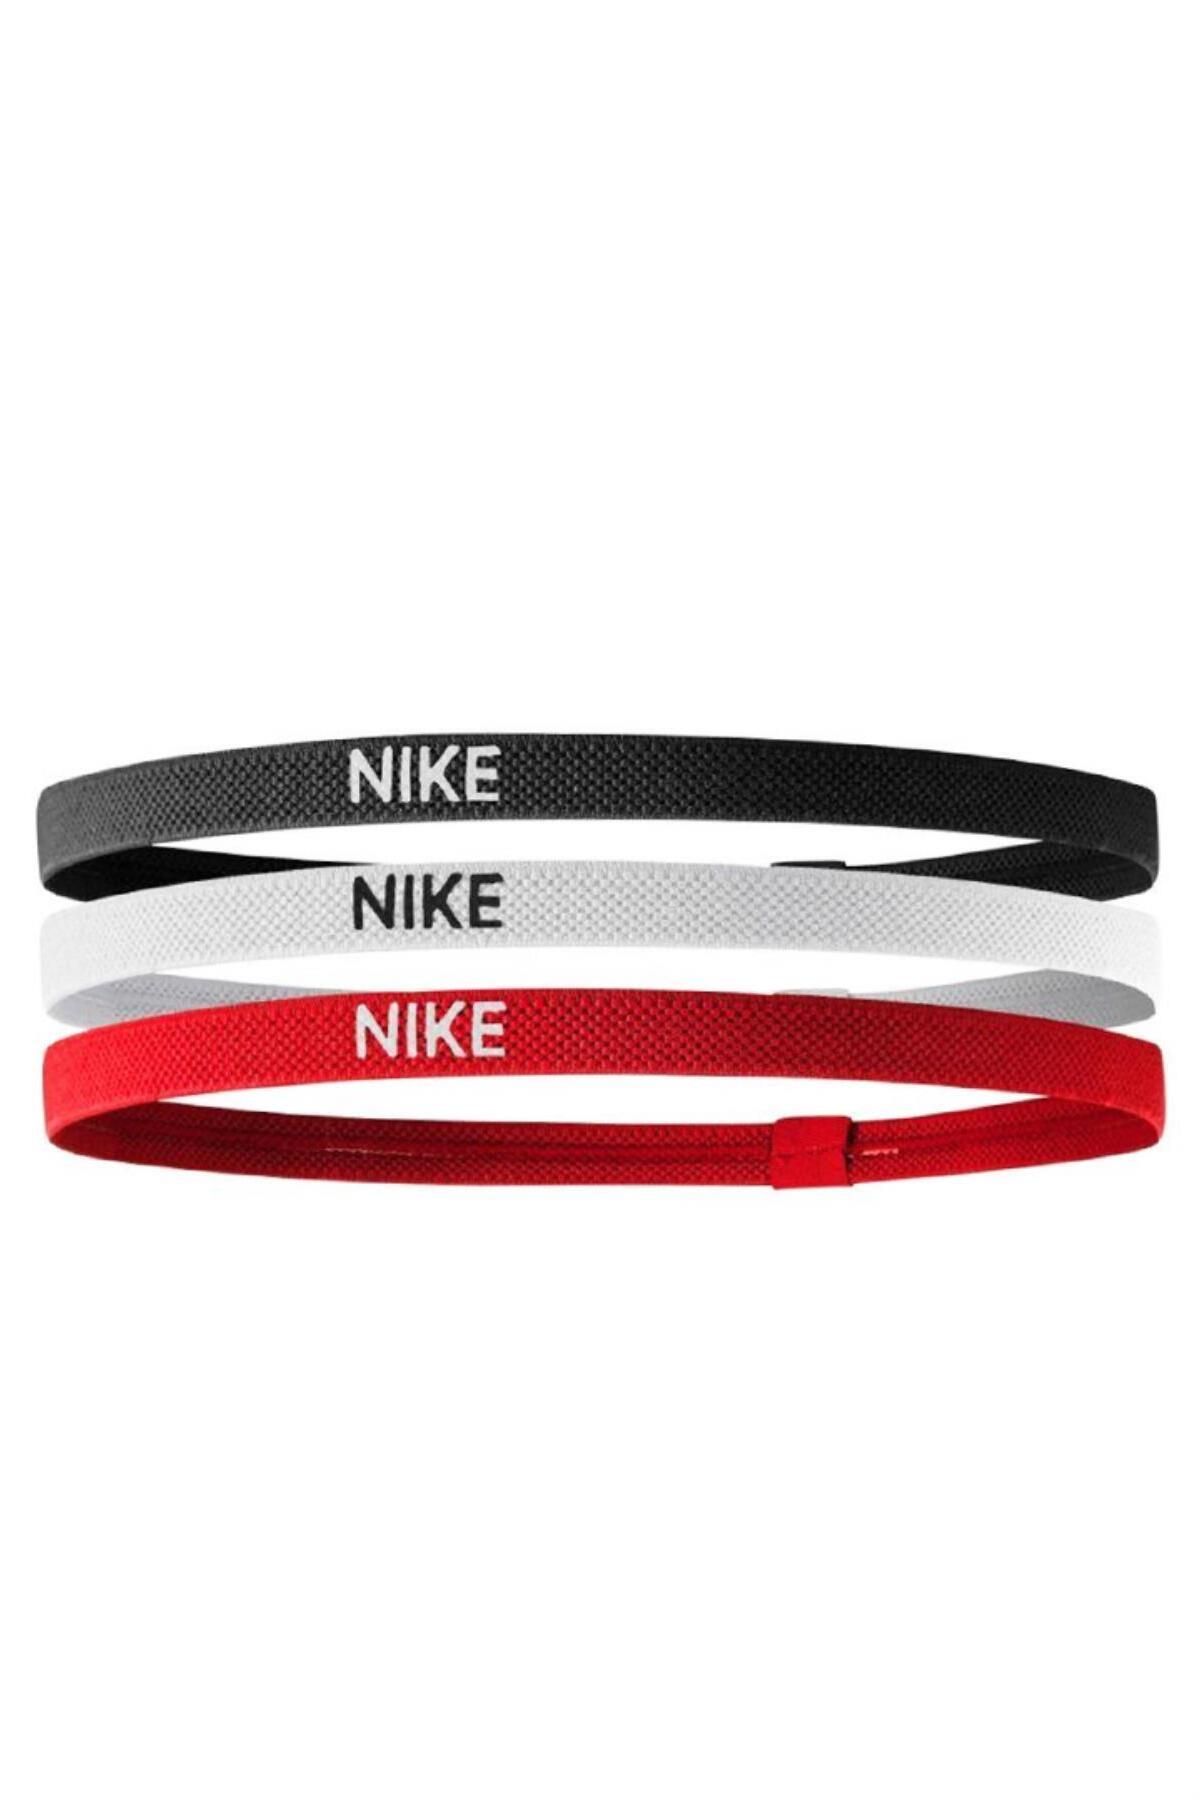 Nike N.jn.04 - Elastik Hairbands Saç Bandı